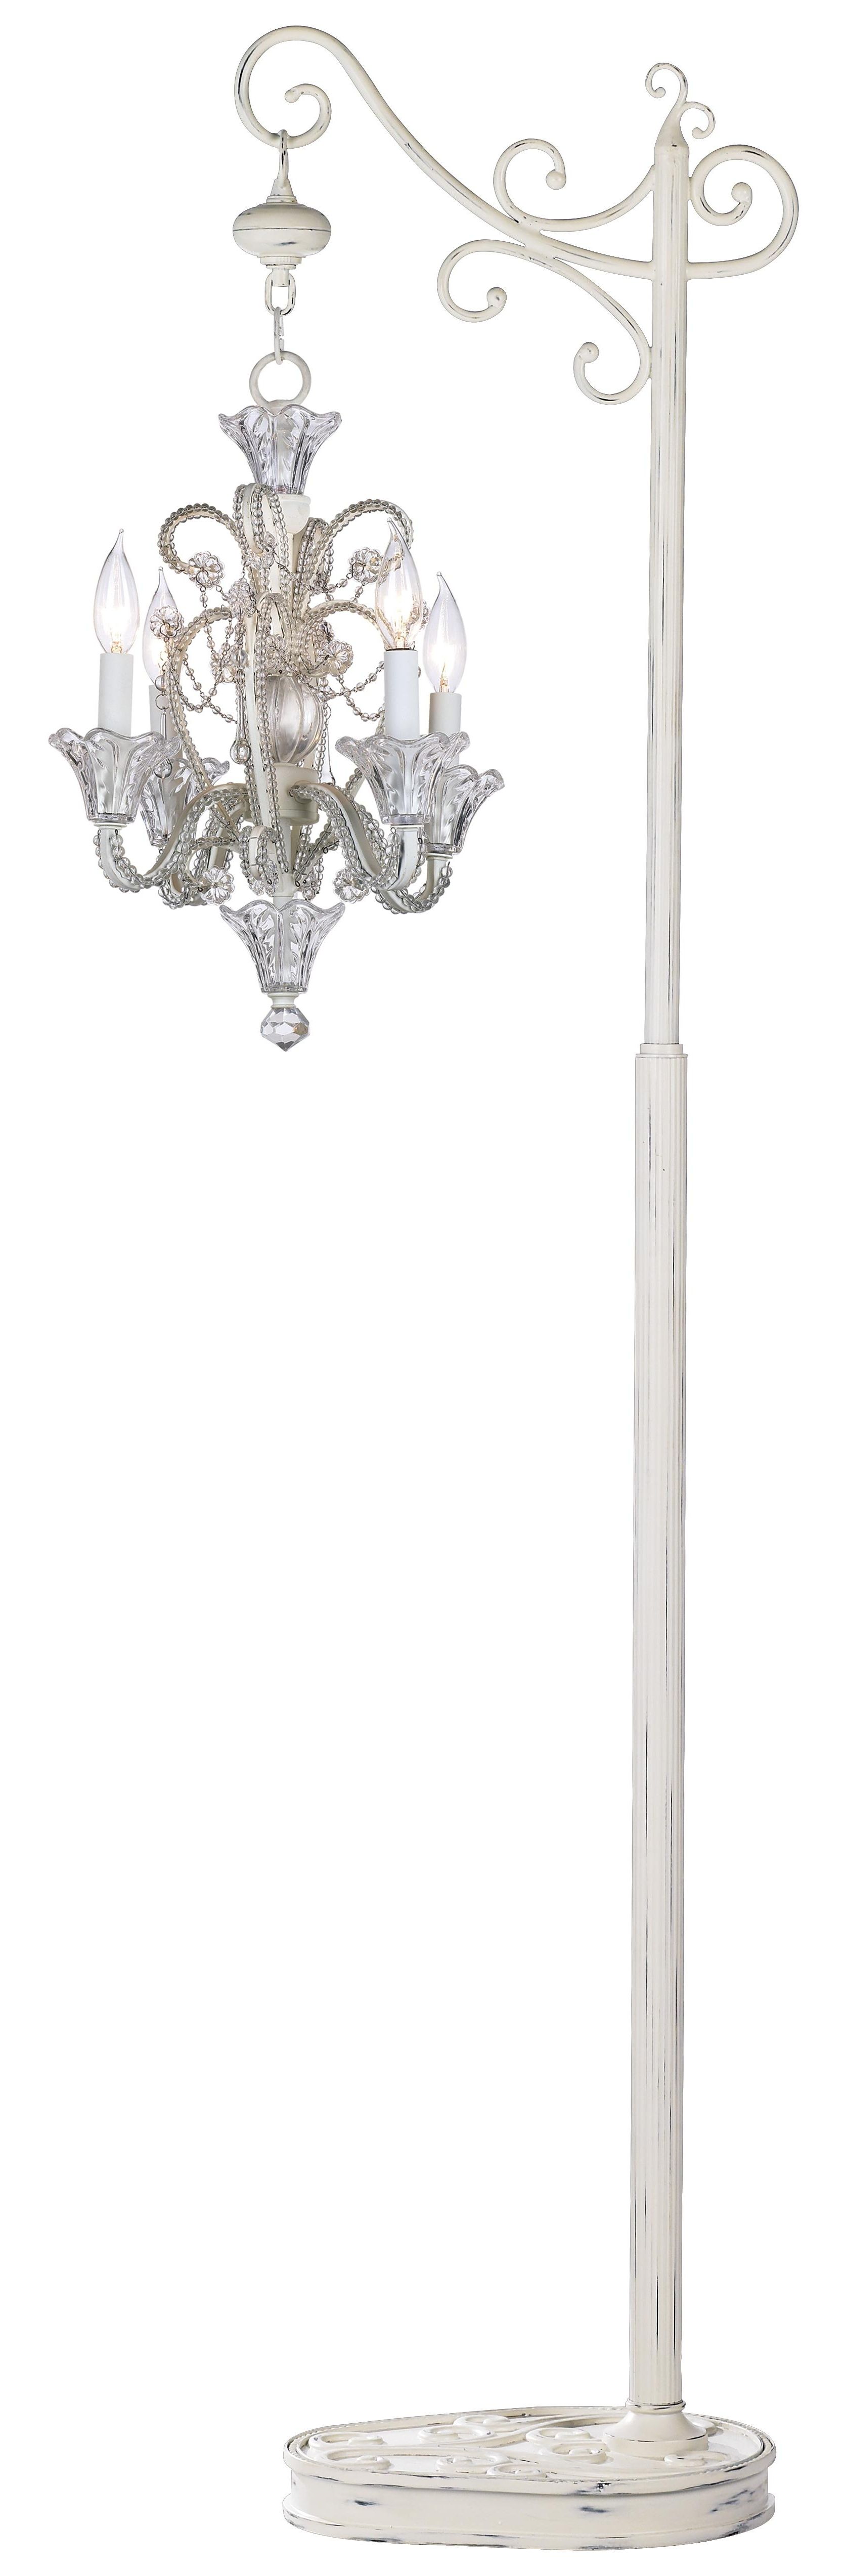 Chandelier Floor Standing Lamps – Chandelier Designs With Regard To Popular Stand Up Chandeliers (View 1 of 20)